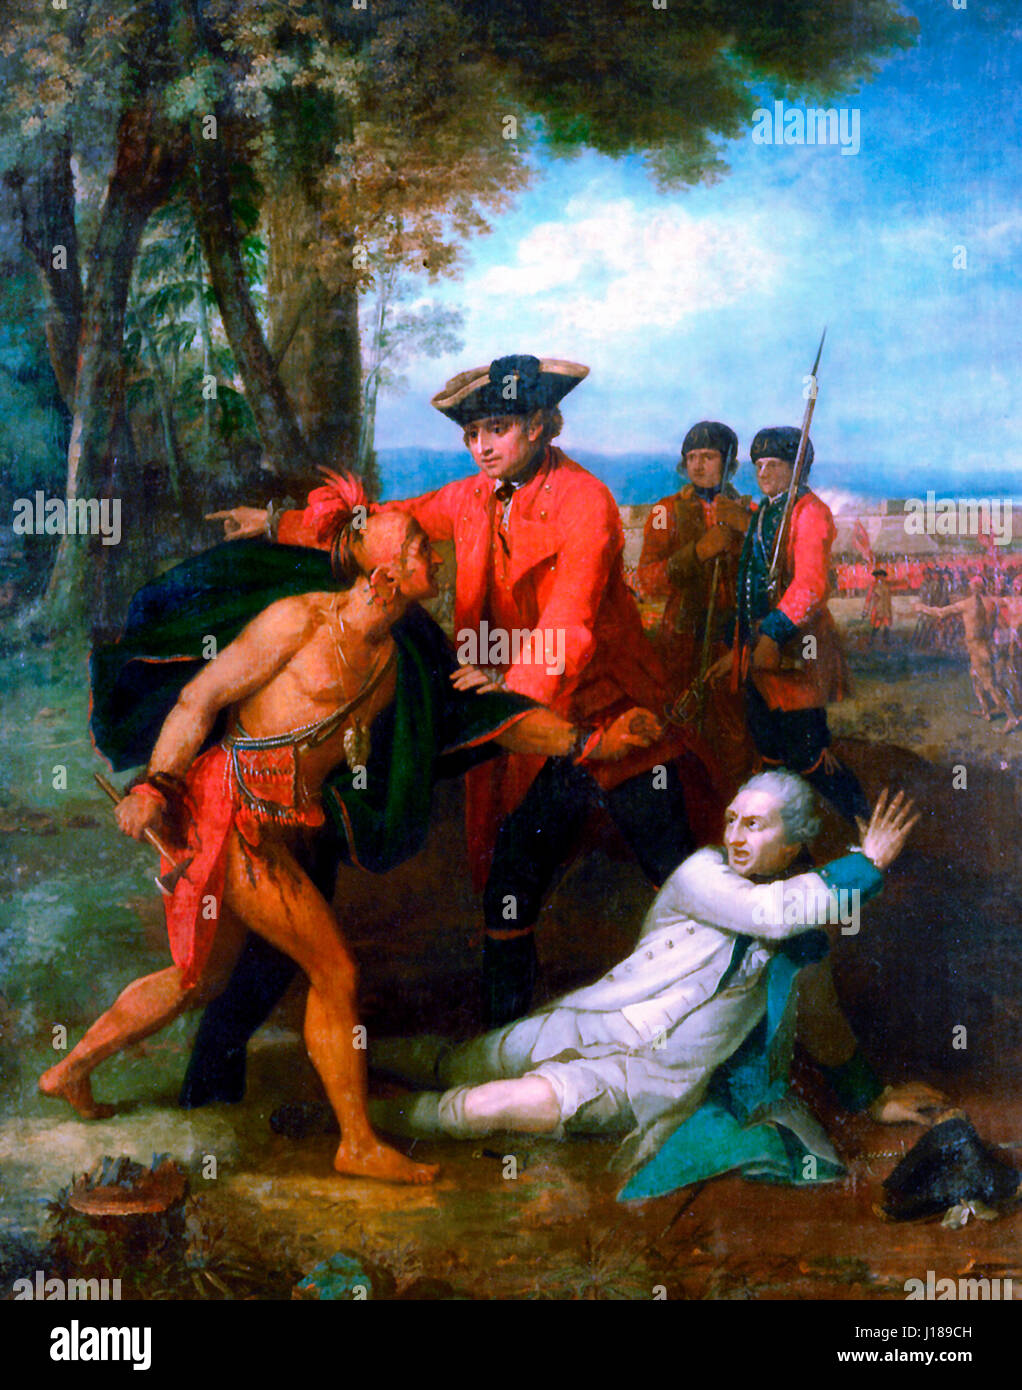 Le général Johnson l'enregistrement d'un officier français blessé du tomahawk d'un Indien de l'Amérique du Nord pendant la guerre de 1755 Banque D'Images